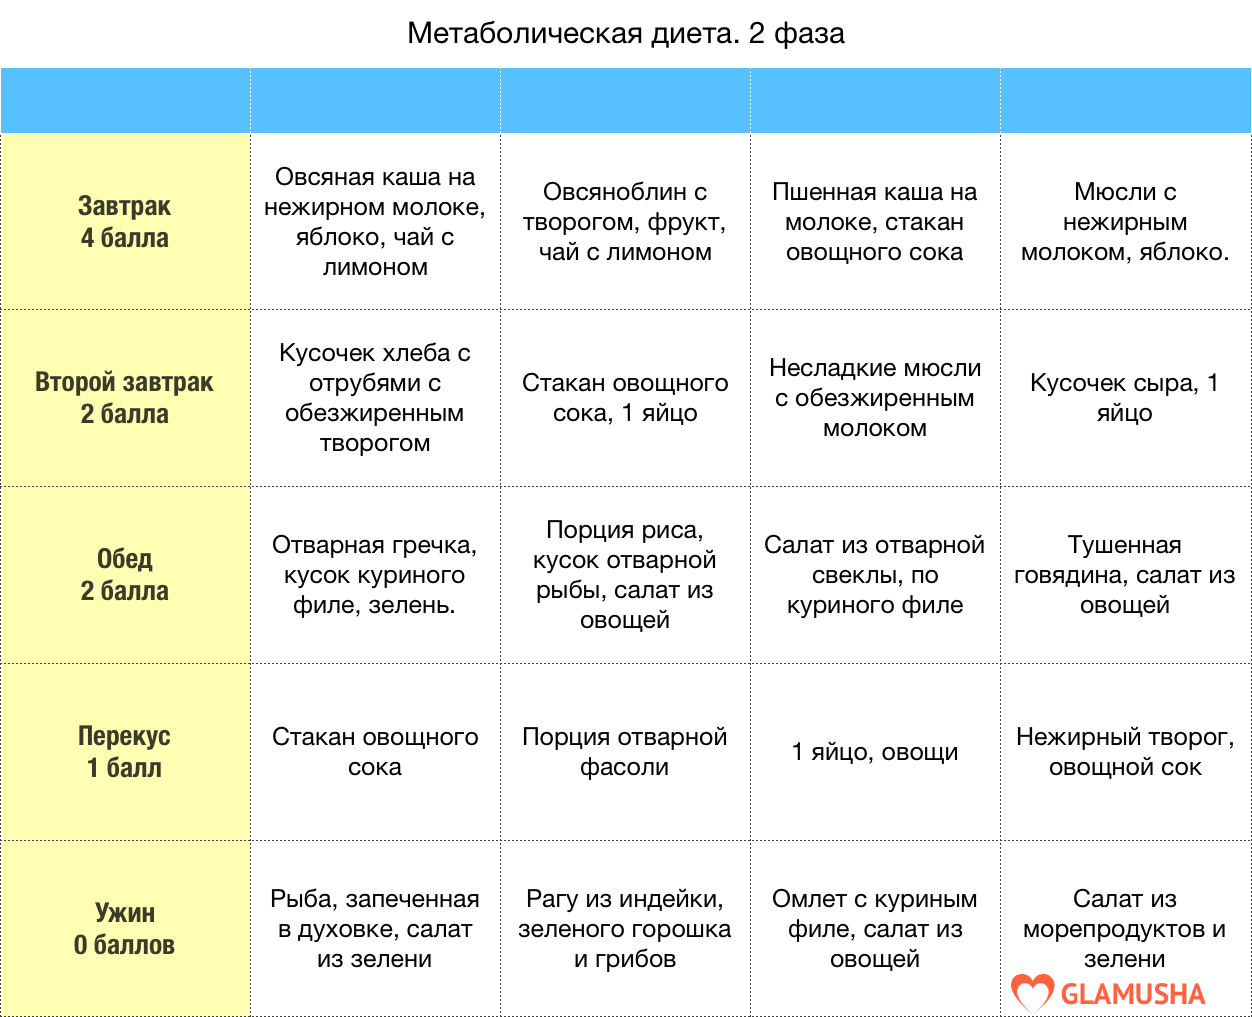 Как правильно соблюдать кремлевскую диету? основные правила